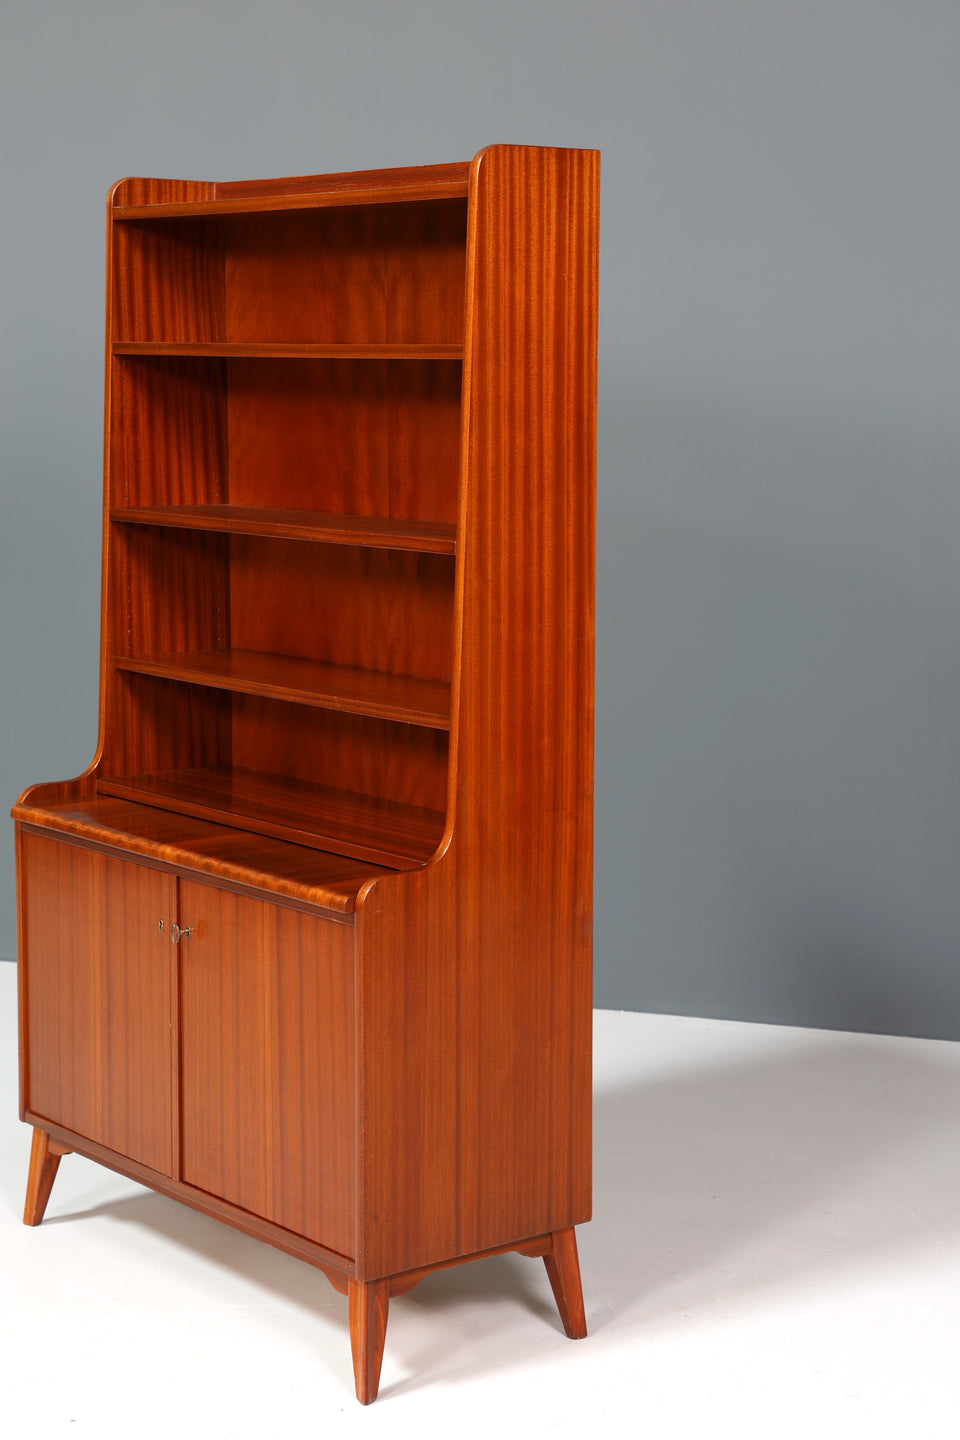 Traumhafter Mid Century Schrank Bücherregal Vintage Highboard Sekretär Holz Regal 60er Jahre